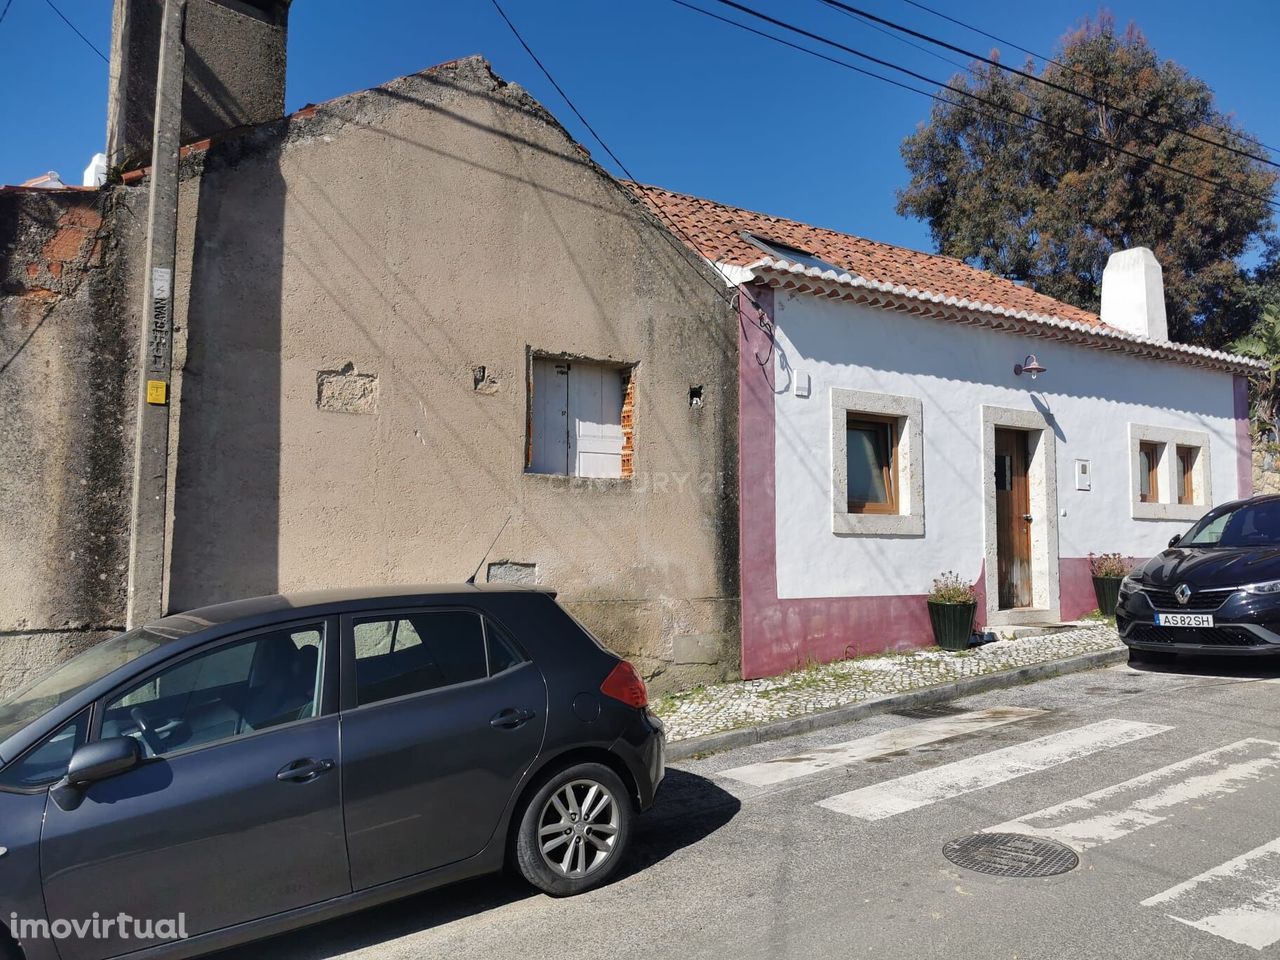 Moradia  para remodelação total,  em Beloura II - Sintra